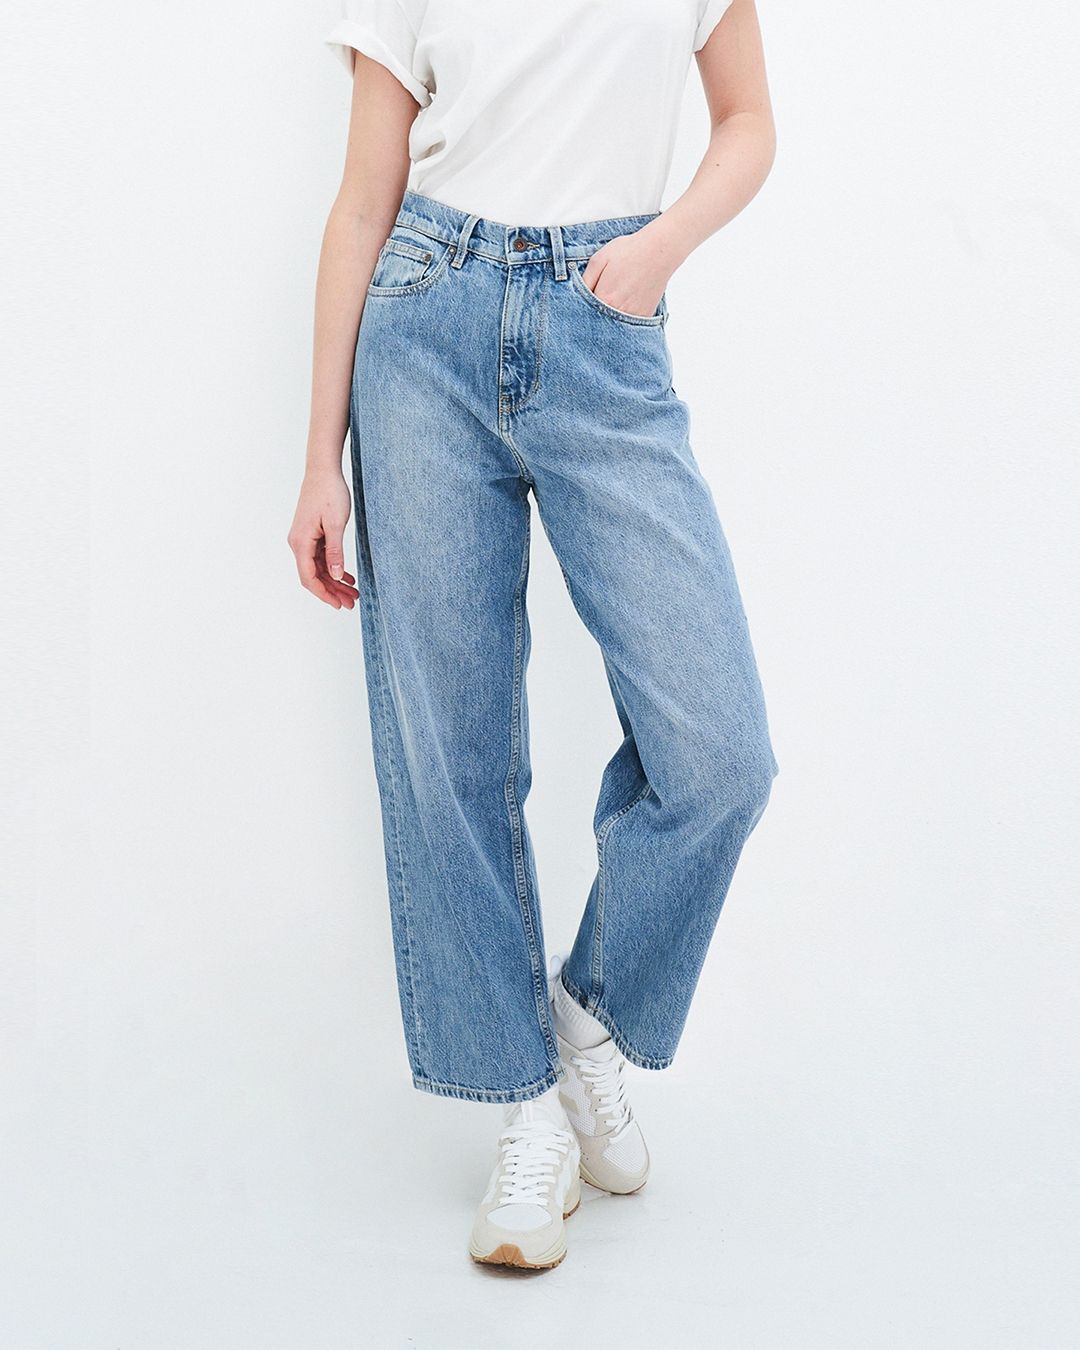 jeans |  Bekleidungsgeschäft | Bella Natura -Keyla Heinze | München